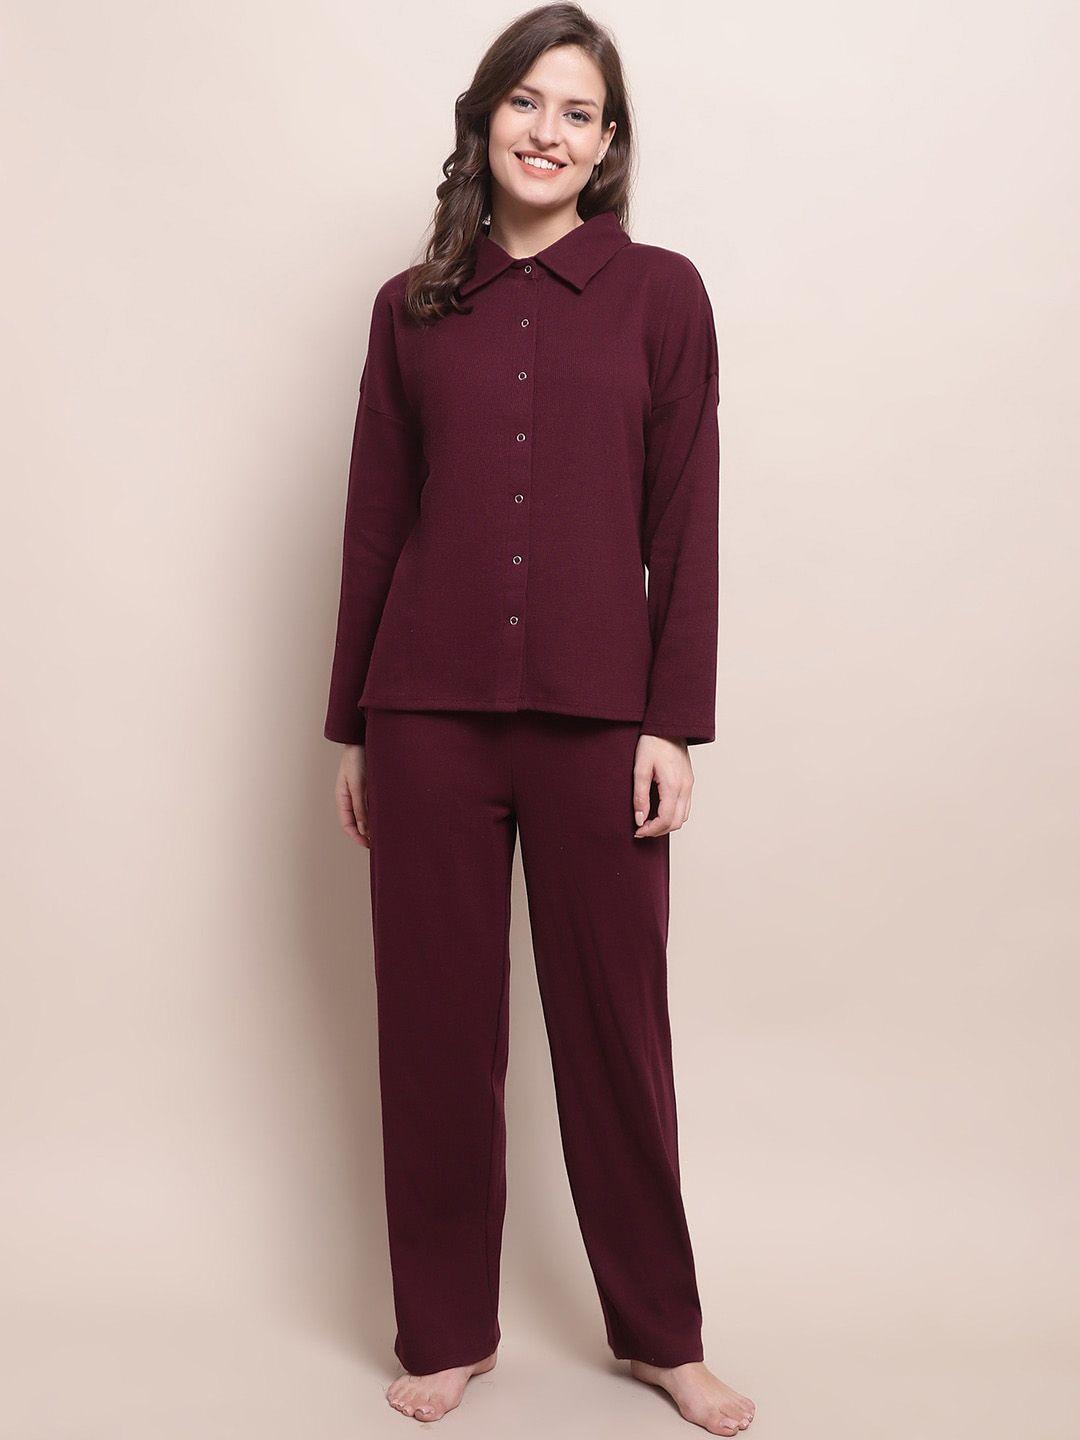 kanvin maroon shirt collar long sleeves shirt with pyjamas